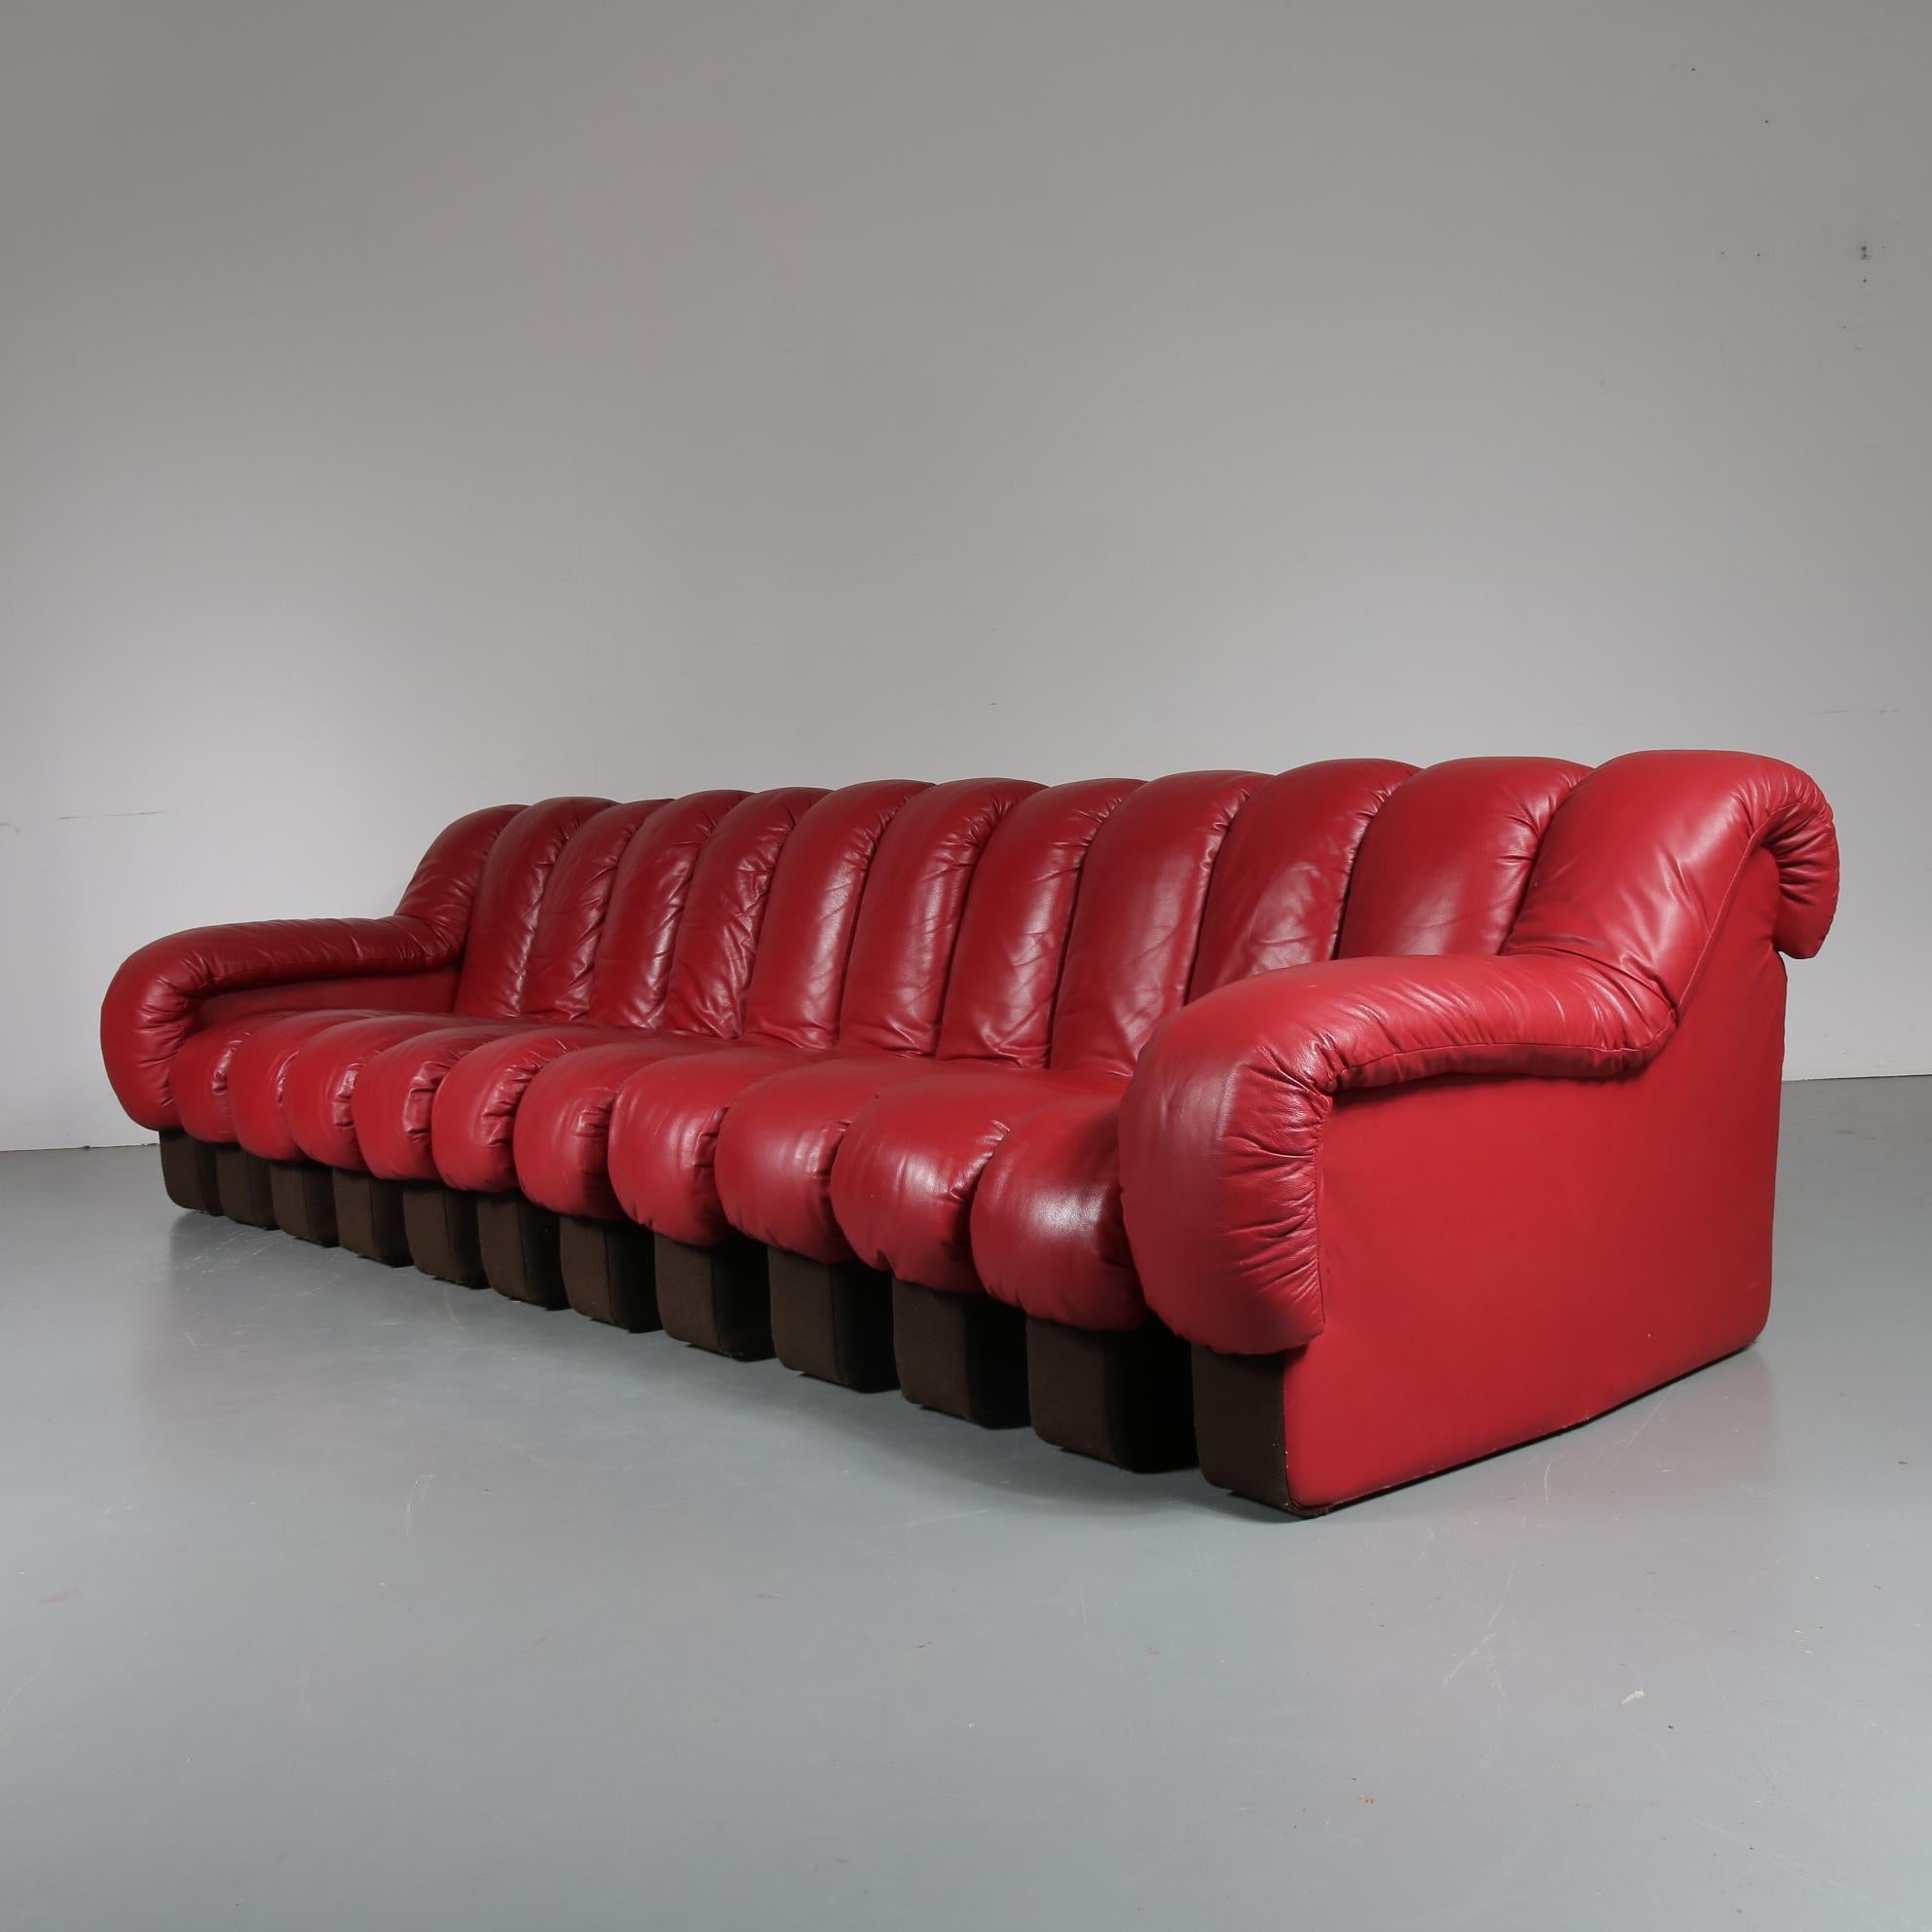 De Sede DS-600 Sofa aus rotem Leder, Schweiz, 1960 (Moderne der Mitte des Jahrhunderts)